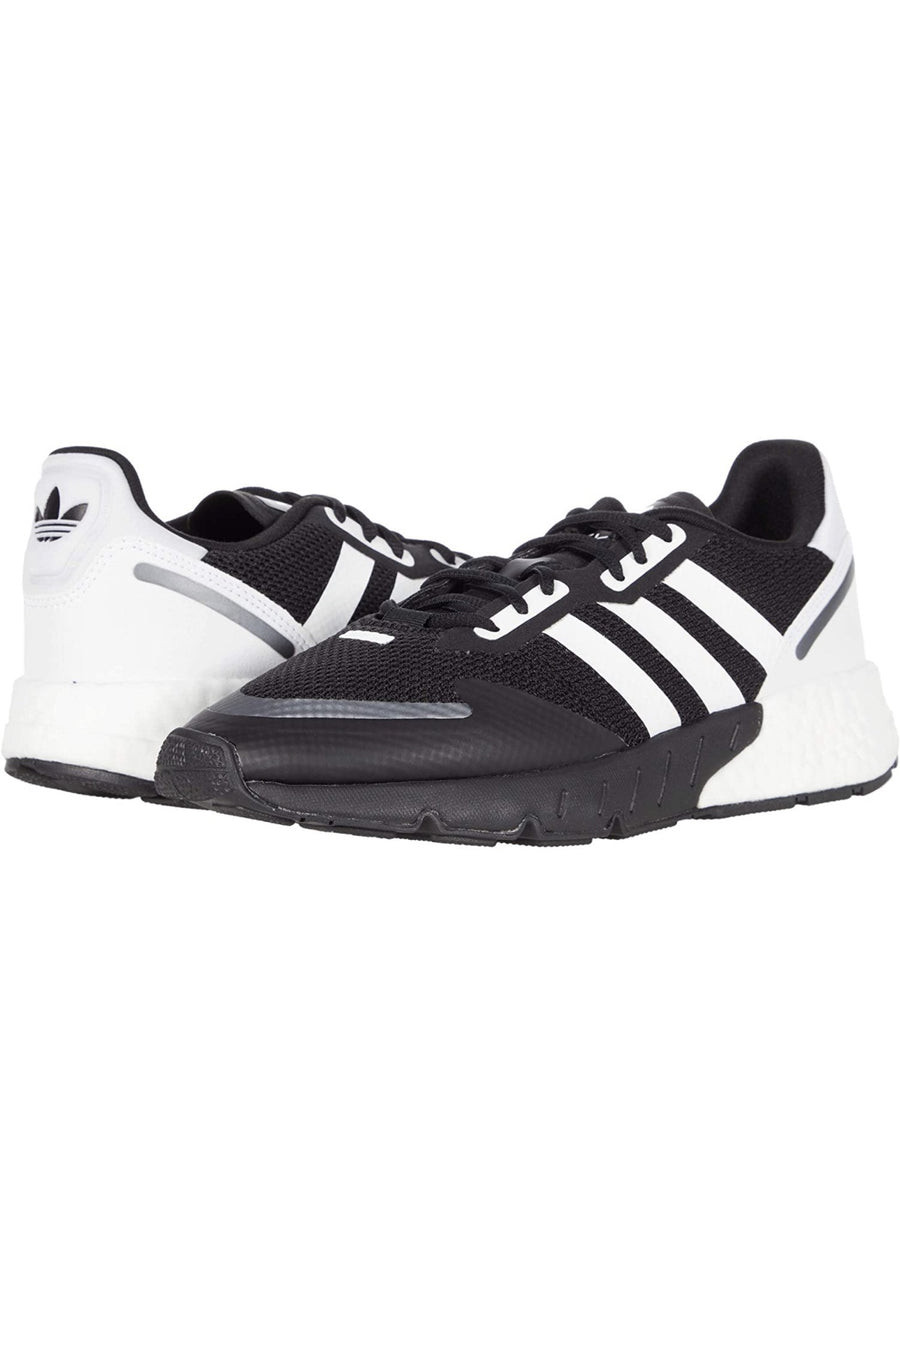 Adidas Original ZX 1K BOOST  Men’s - BLACK/ WHITE